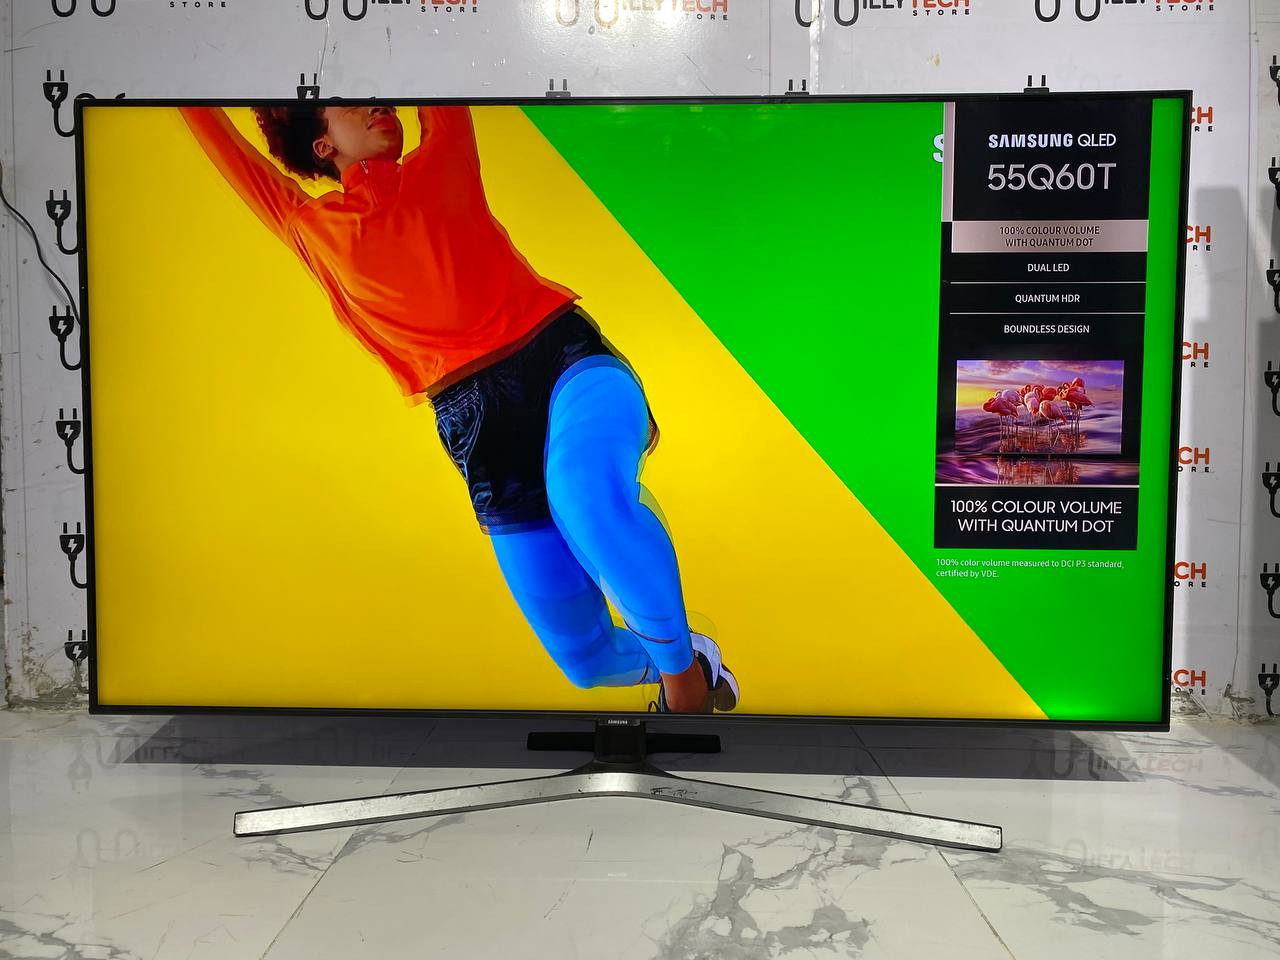 Samsung Smart Hub 55" QLED 4K HDR TV [2020]